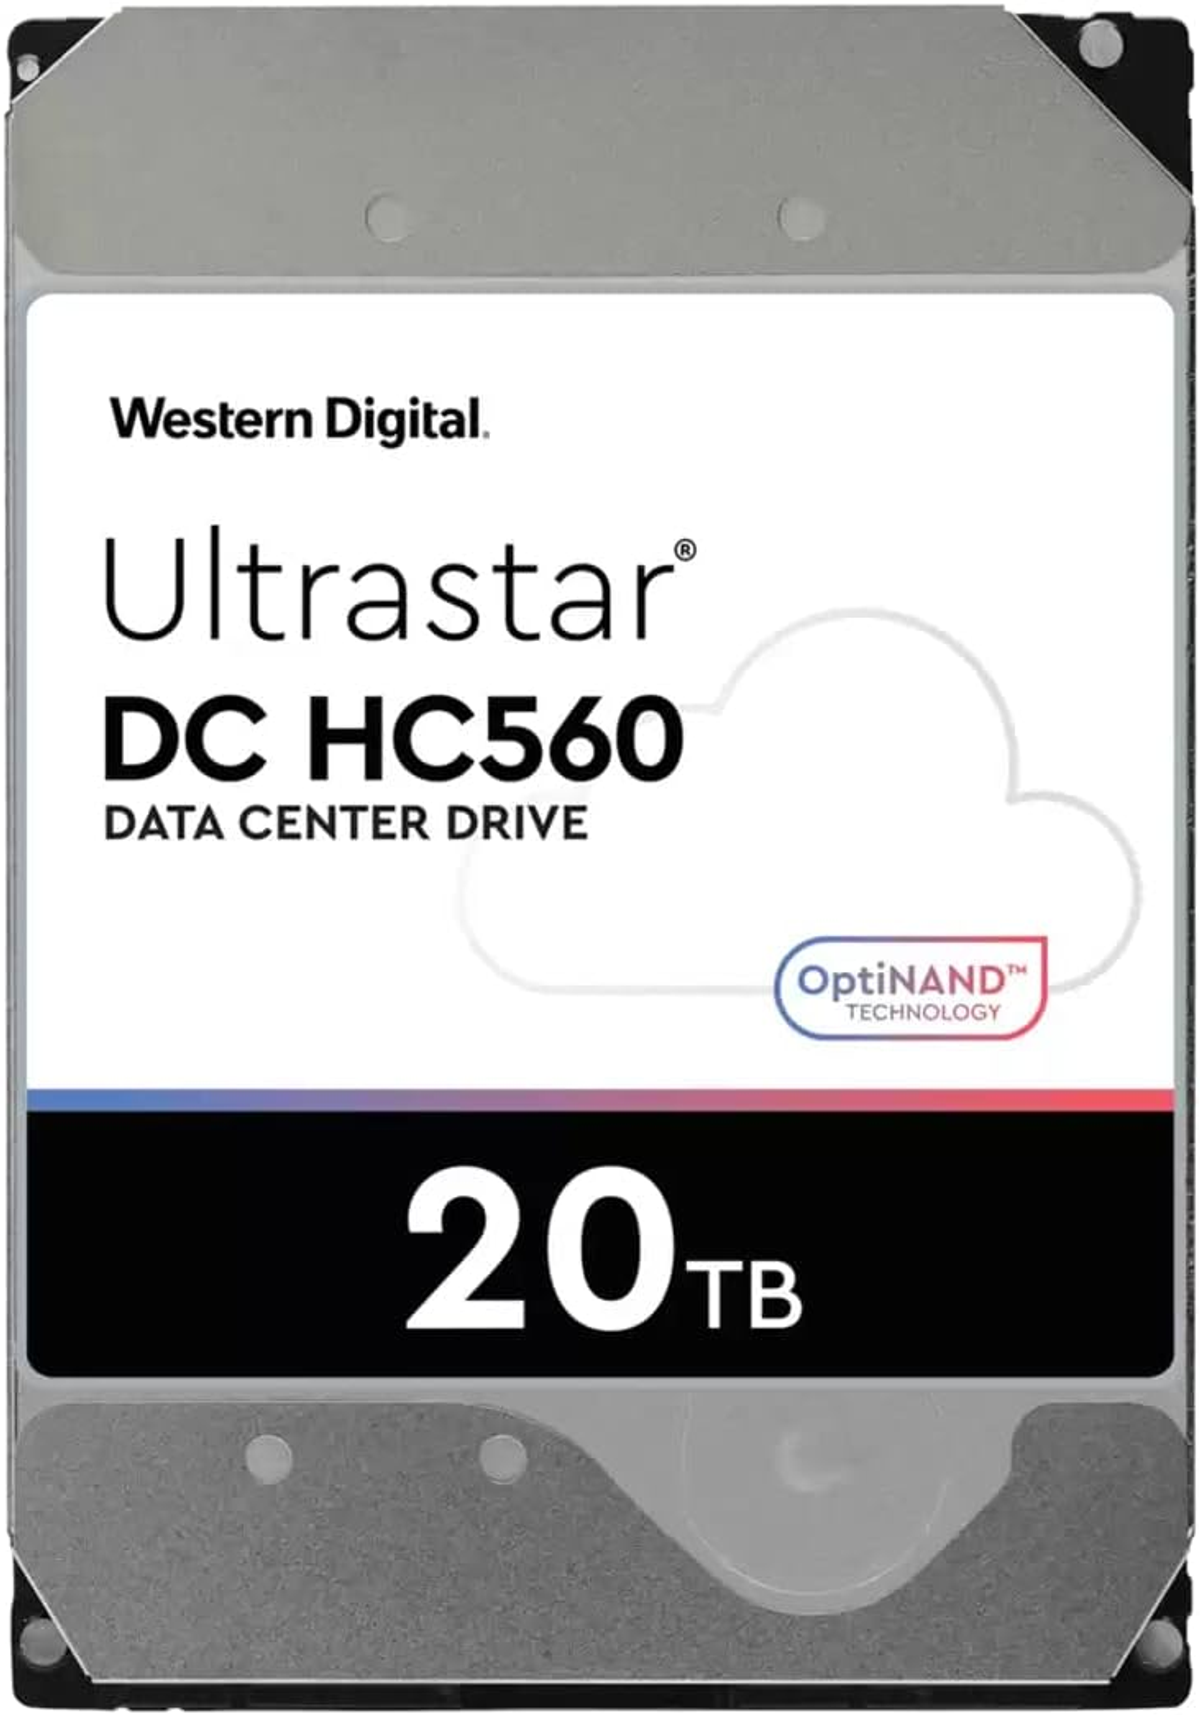 WESTERN DIGITAL 20TB WD Ultrastar 512MB DH intern Ent., TB, HC560 7200RPM Zoll, HDD, 20 3,5